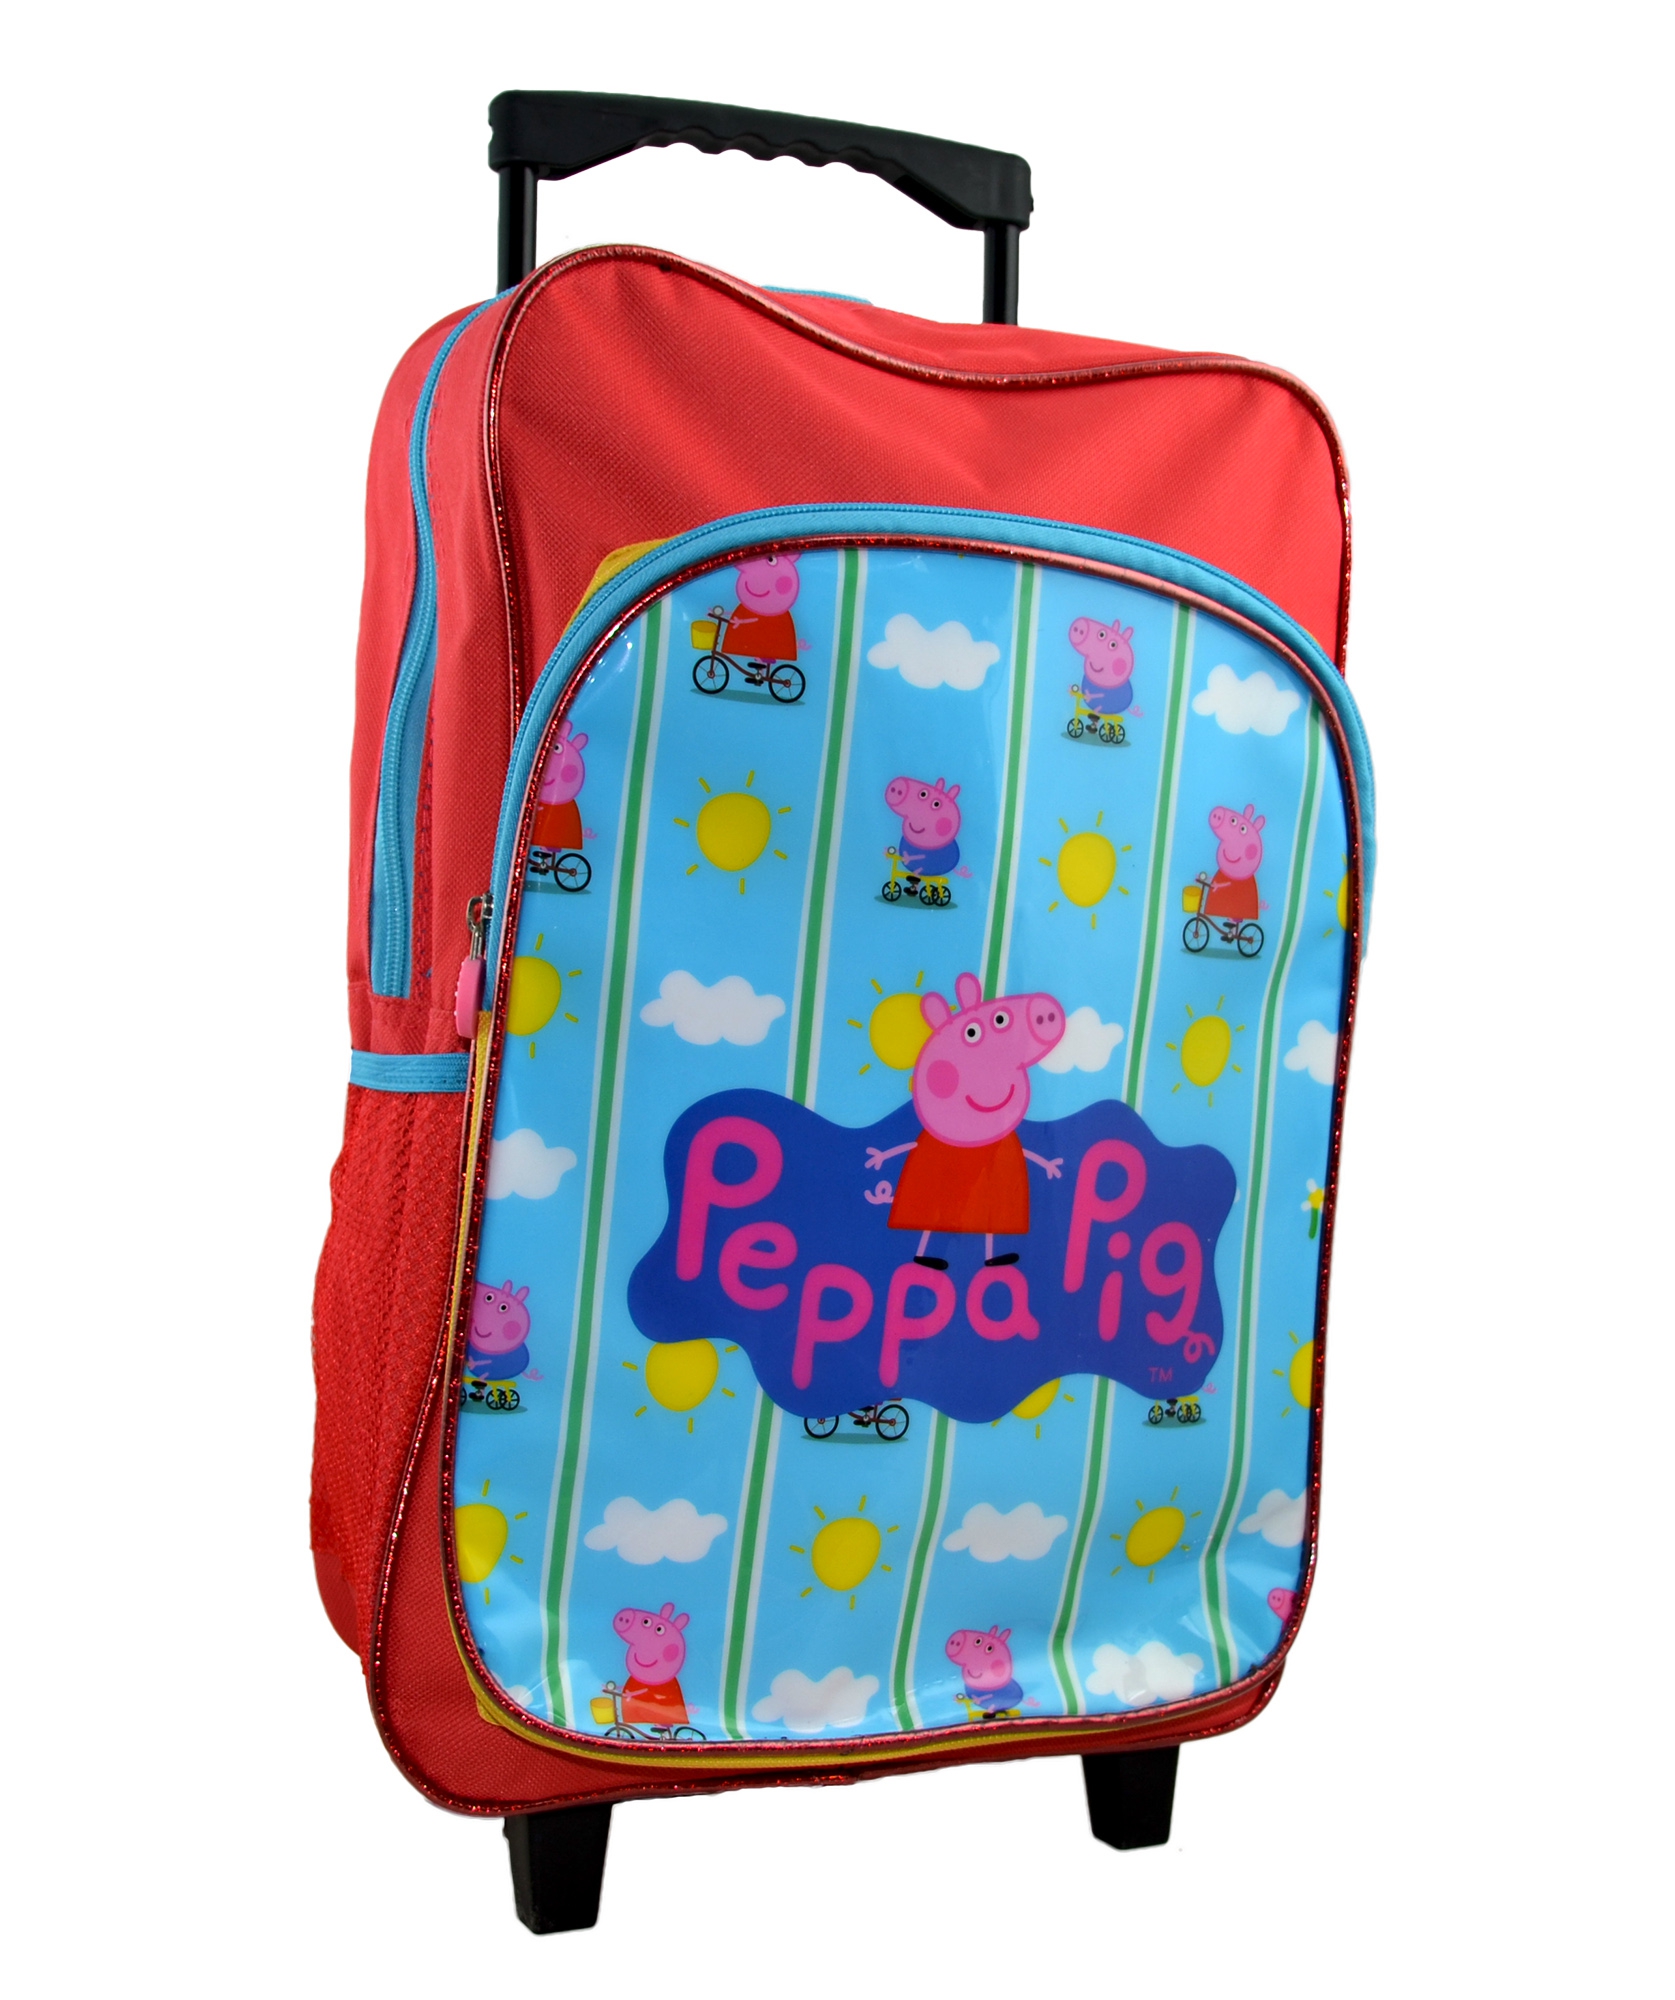 Peppa Pig 'Bicycle' School Travel Trolley Roller Wheeled Bag